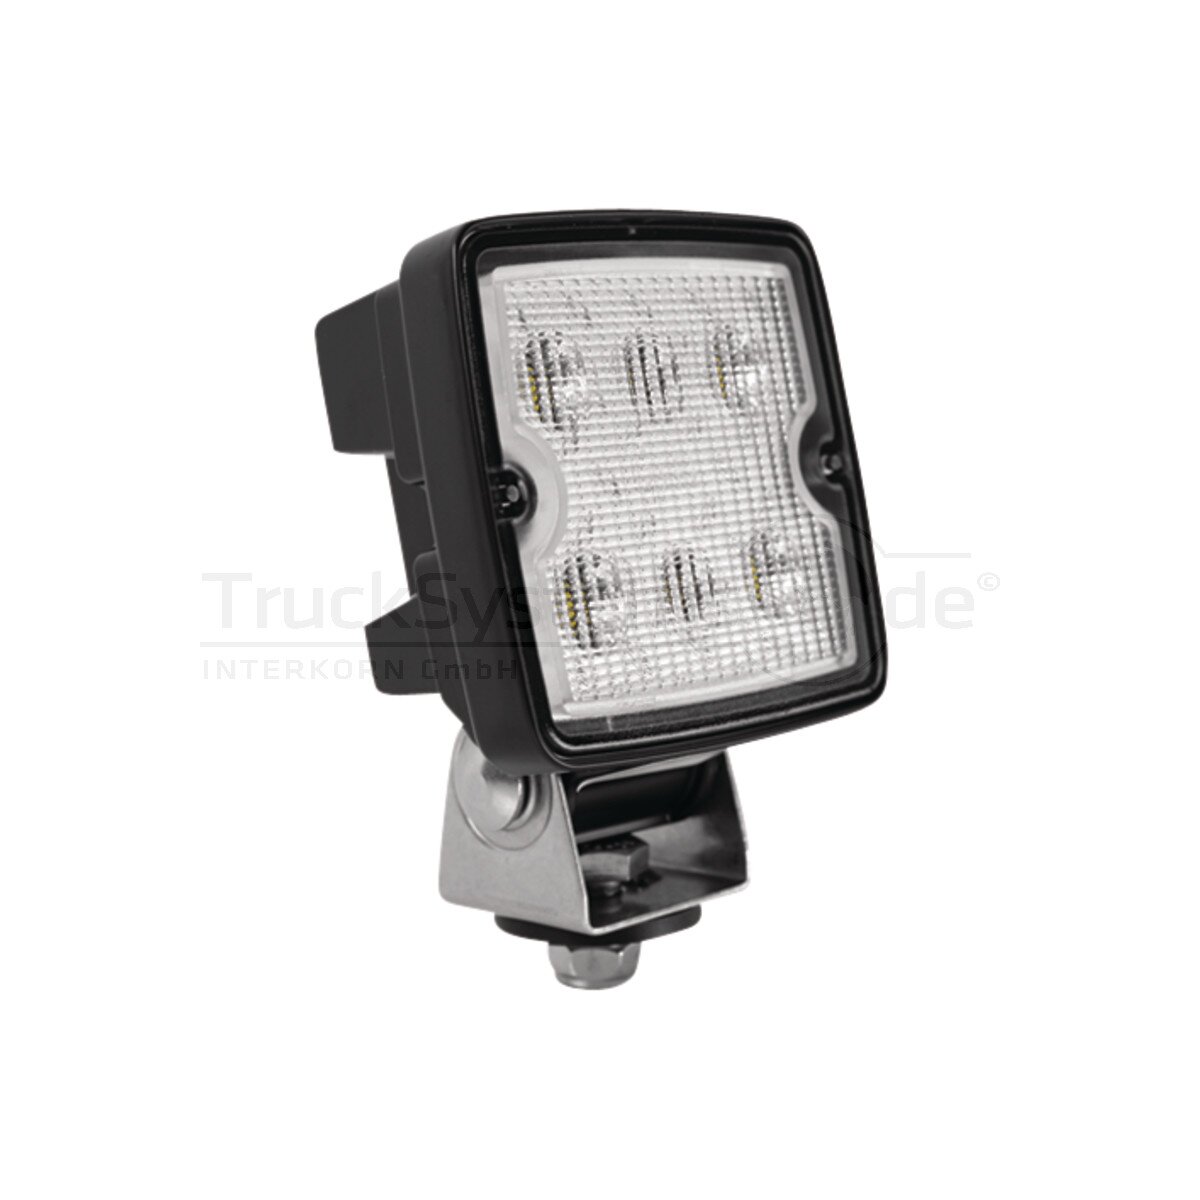 GROTE LED-Rückfahrscheinwerfer e-QUAD 24 V - 0163U712, 174,99 €